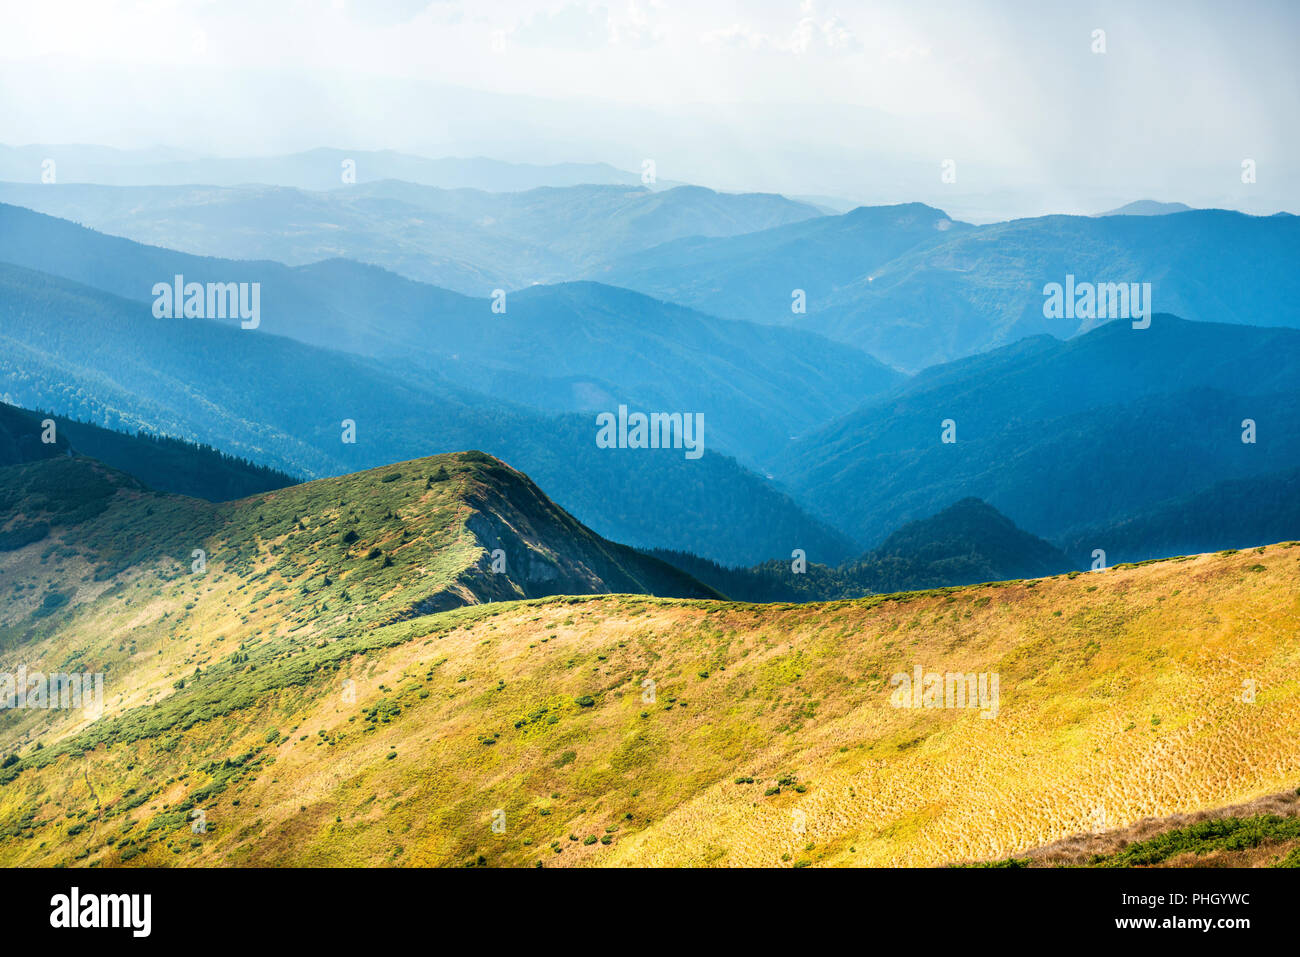 La gamma della montagna a secco con erba gialla Foto Stock